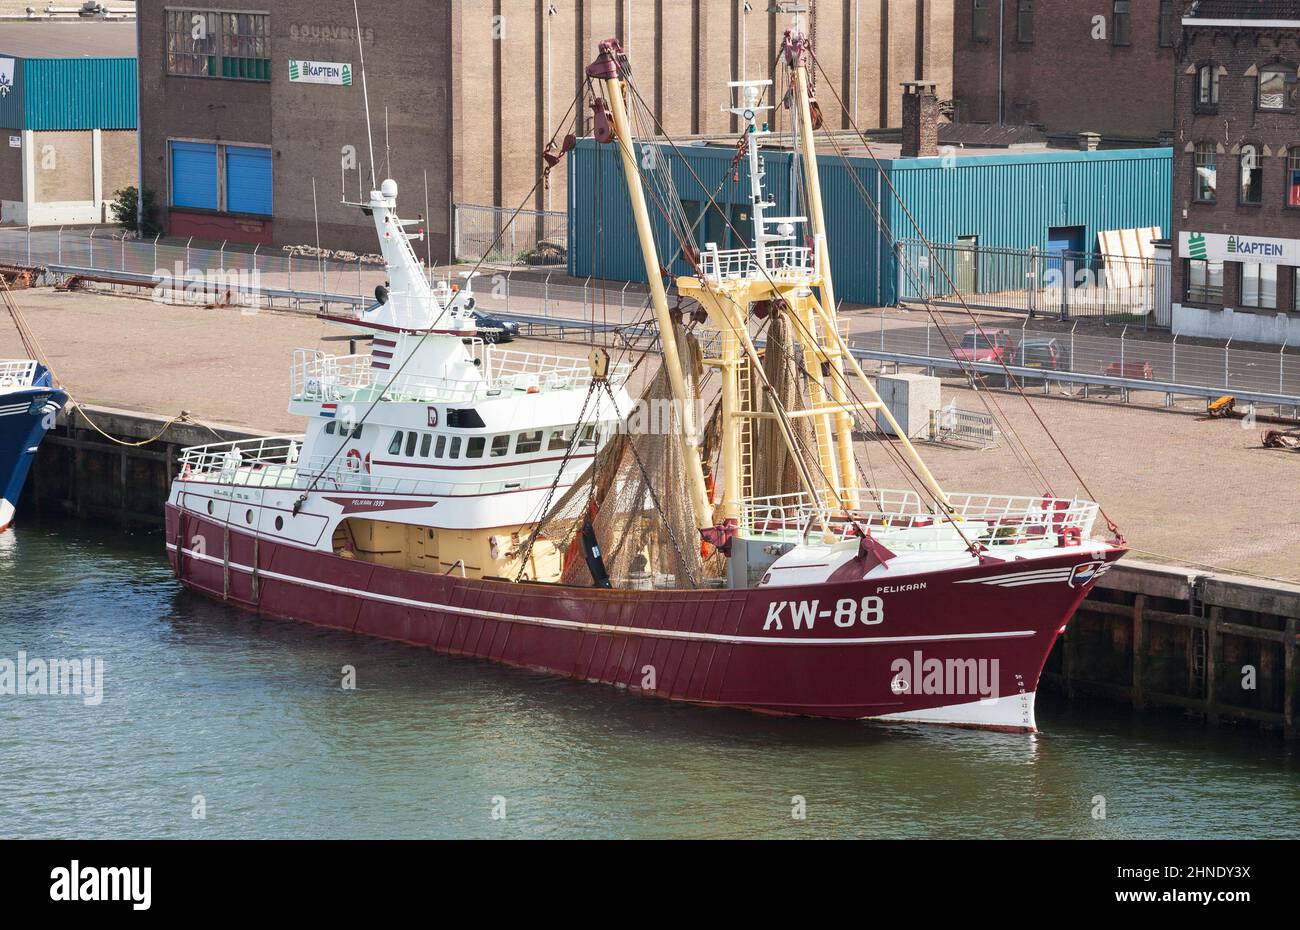 La nave da pesca KW-88 Pelikaan ormeggiata nel porto di Ijmuiden, Paesi Bassi, Europa. Foto Stock